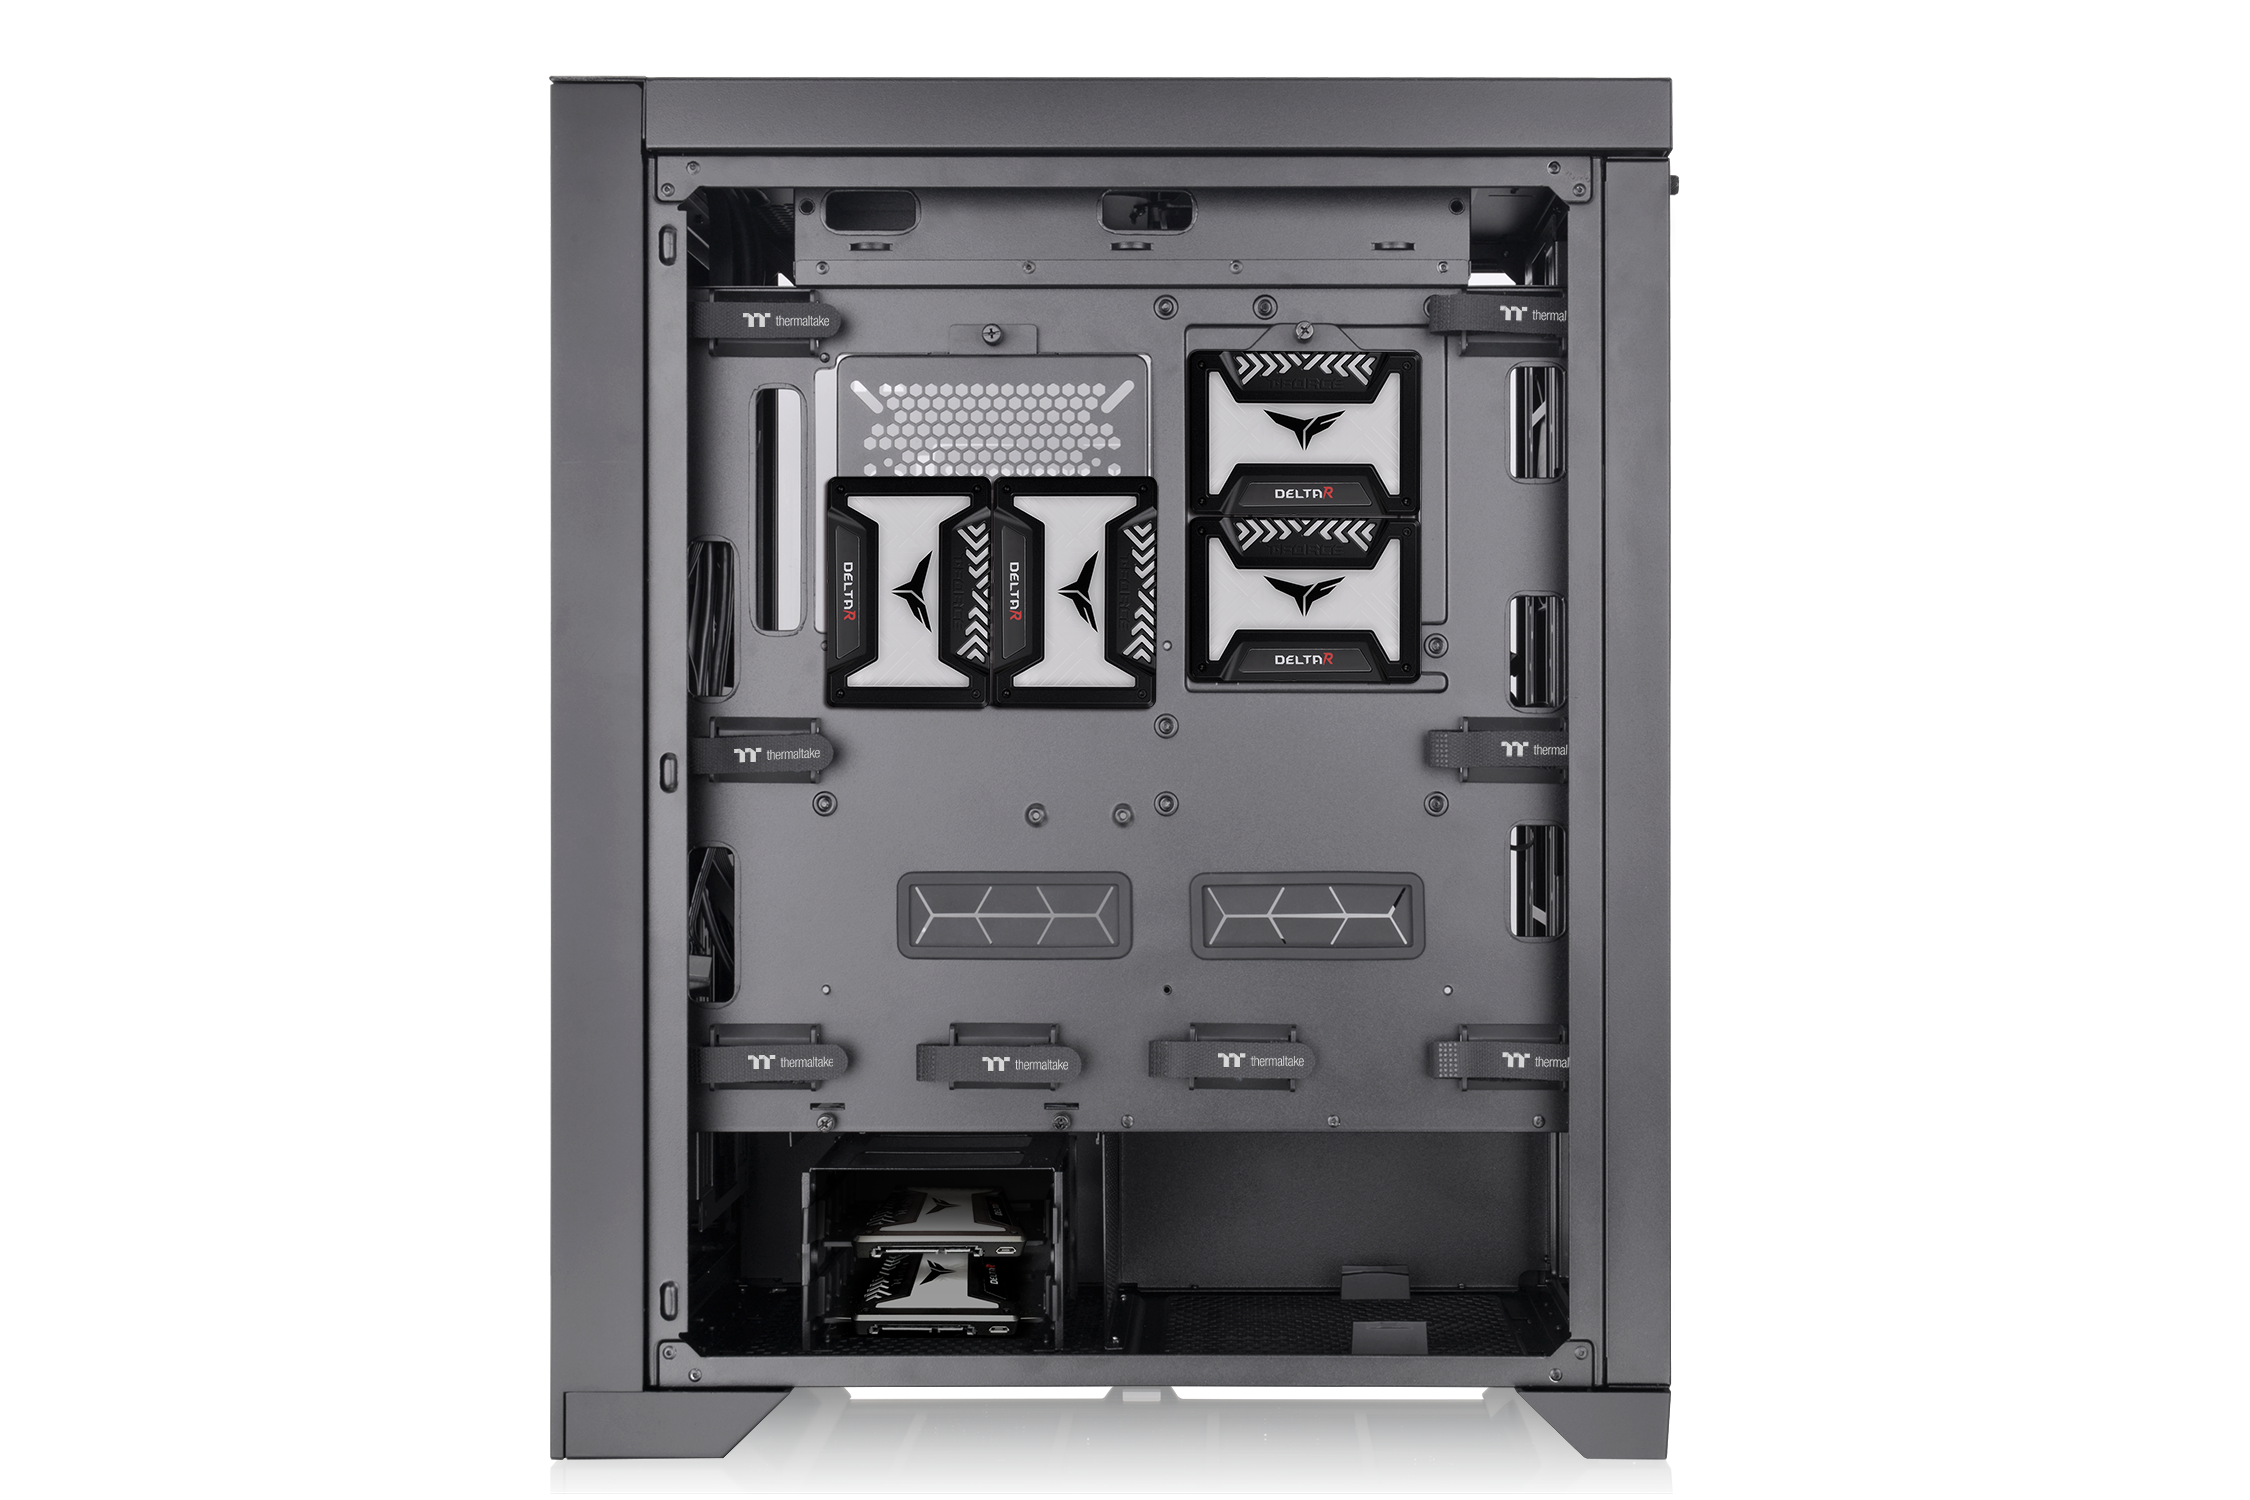 ThermalTake - Thermaltake CTE T500 Air Full Tower Case - Black